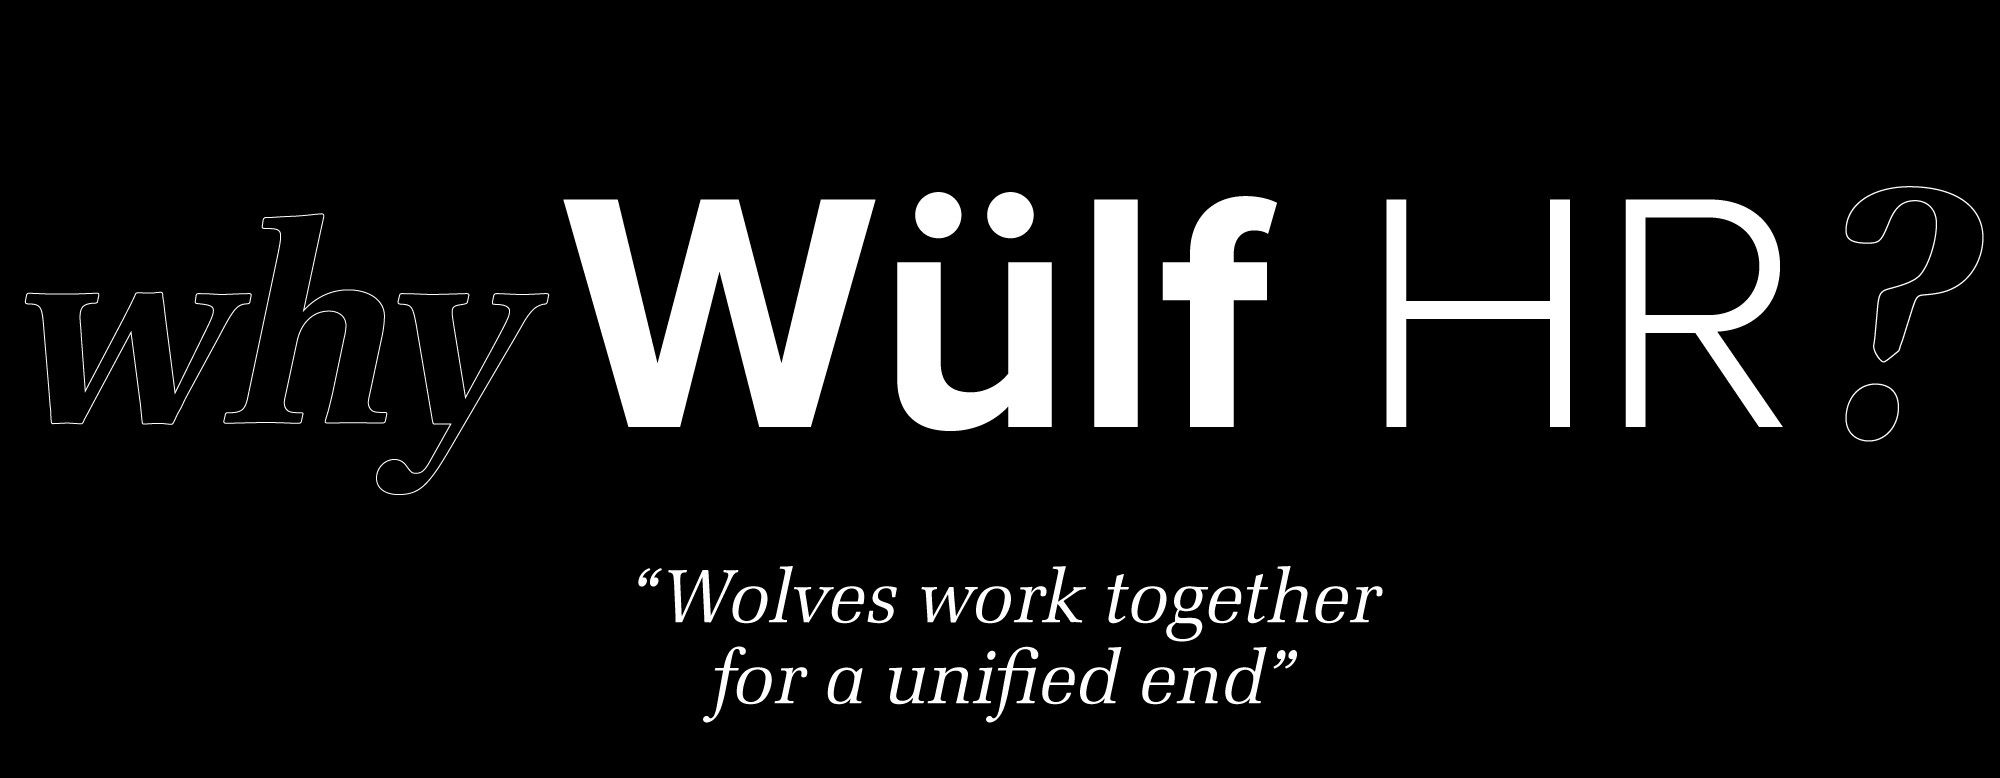 Wulf banner Why Wulf HR?